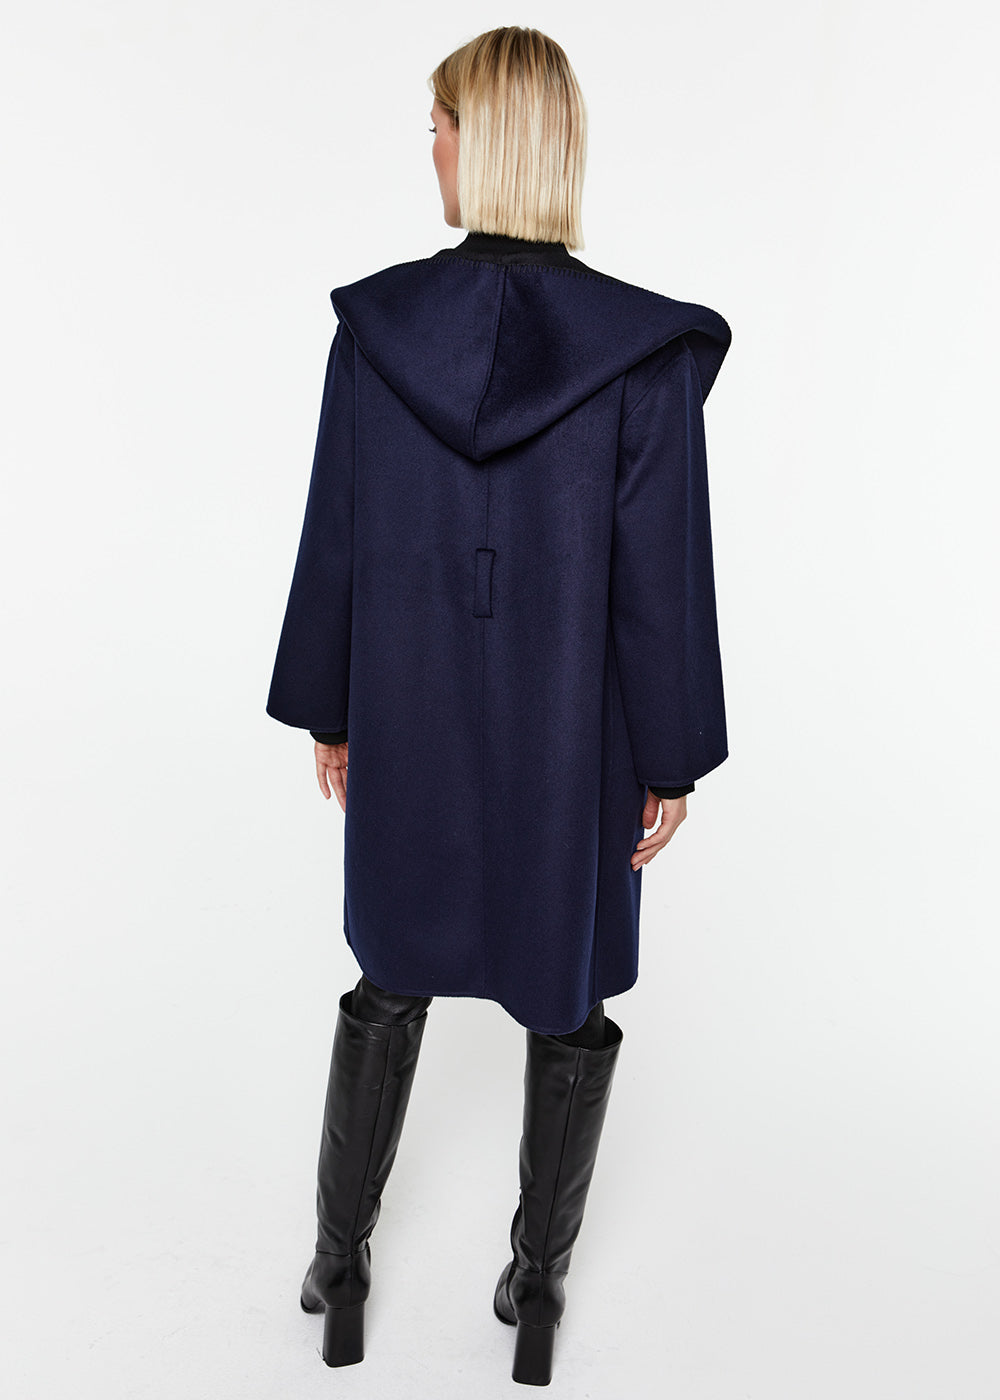 manteau réversible capuche col tailleur laine cachemire noir marine